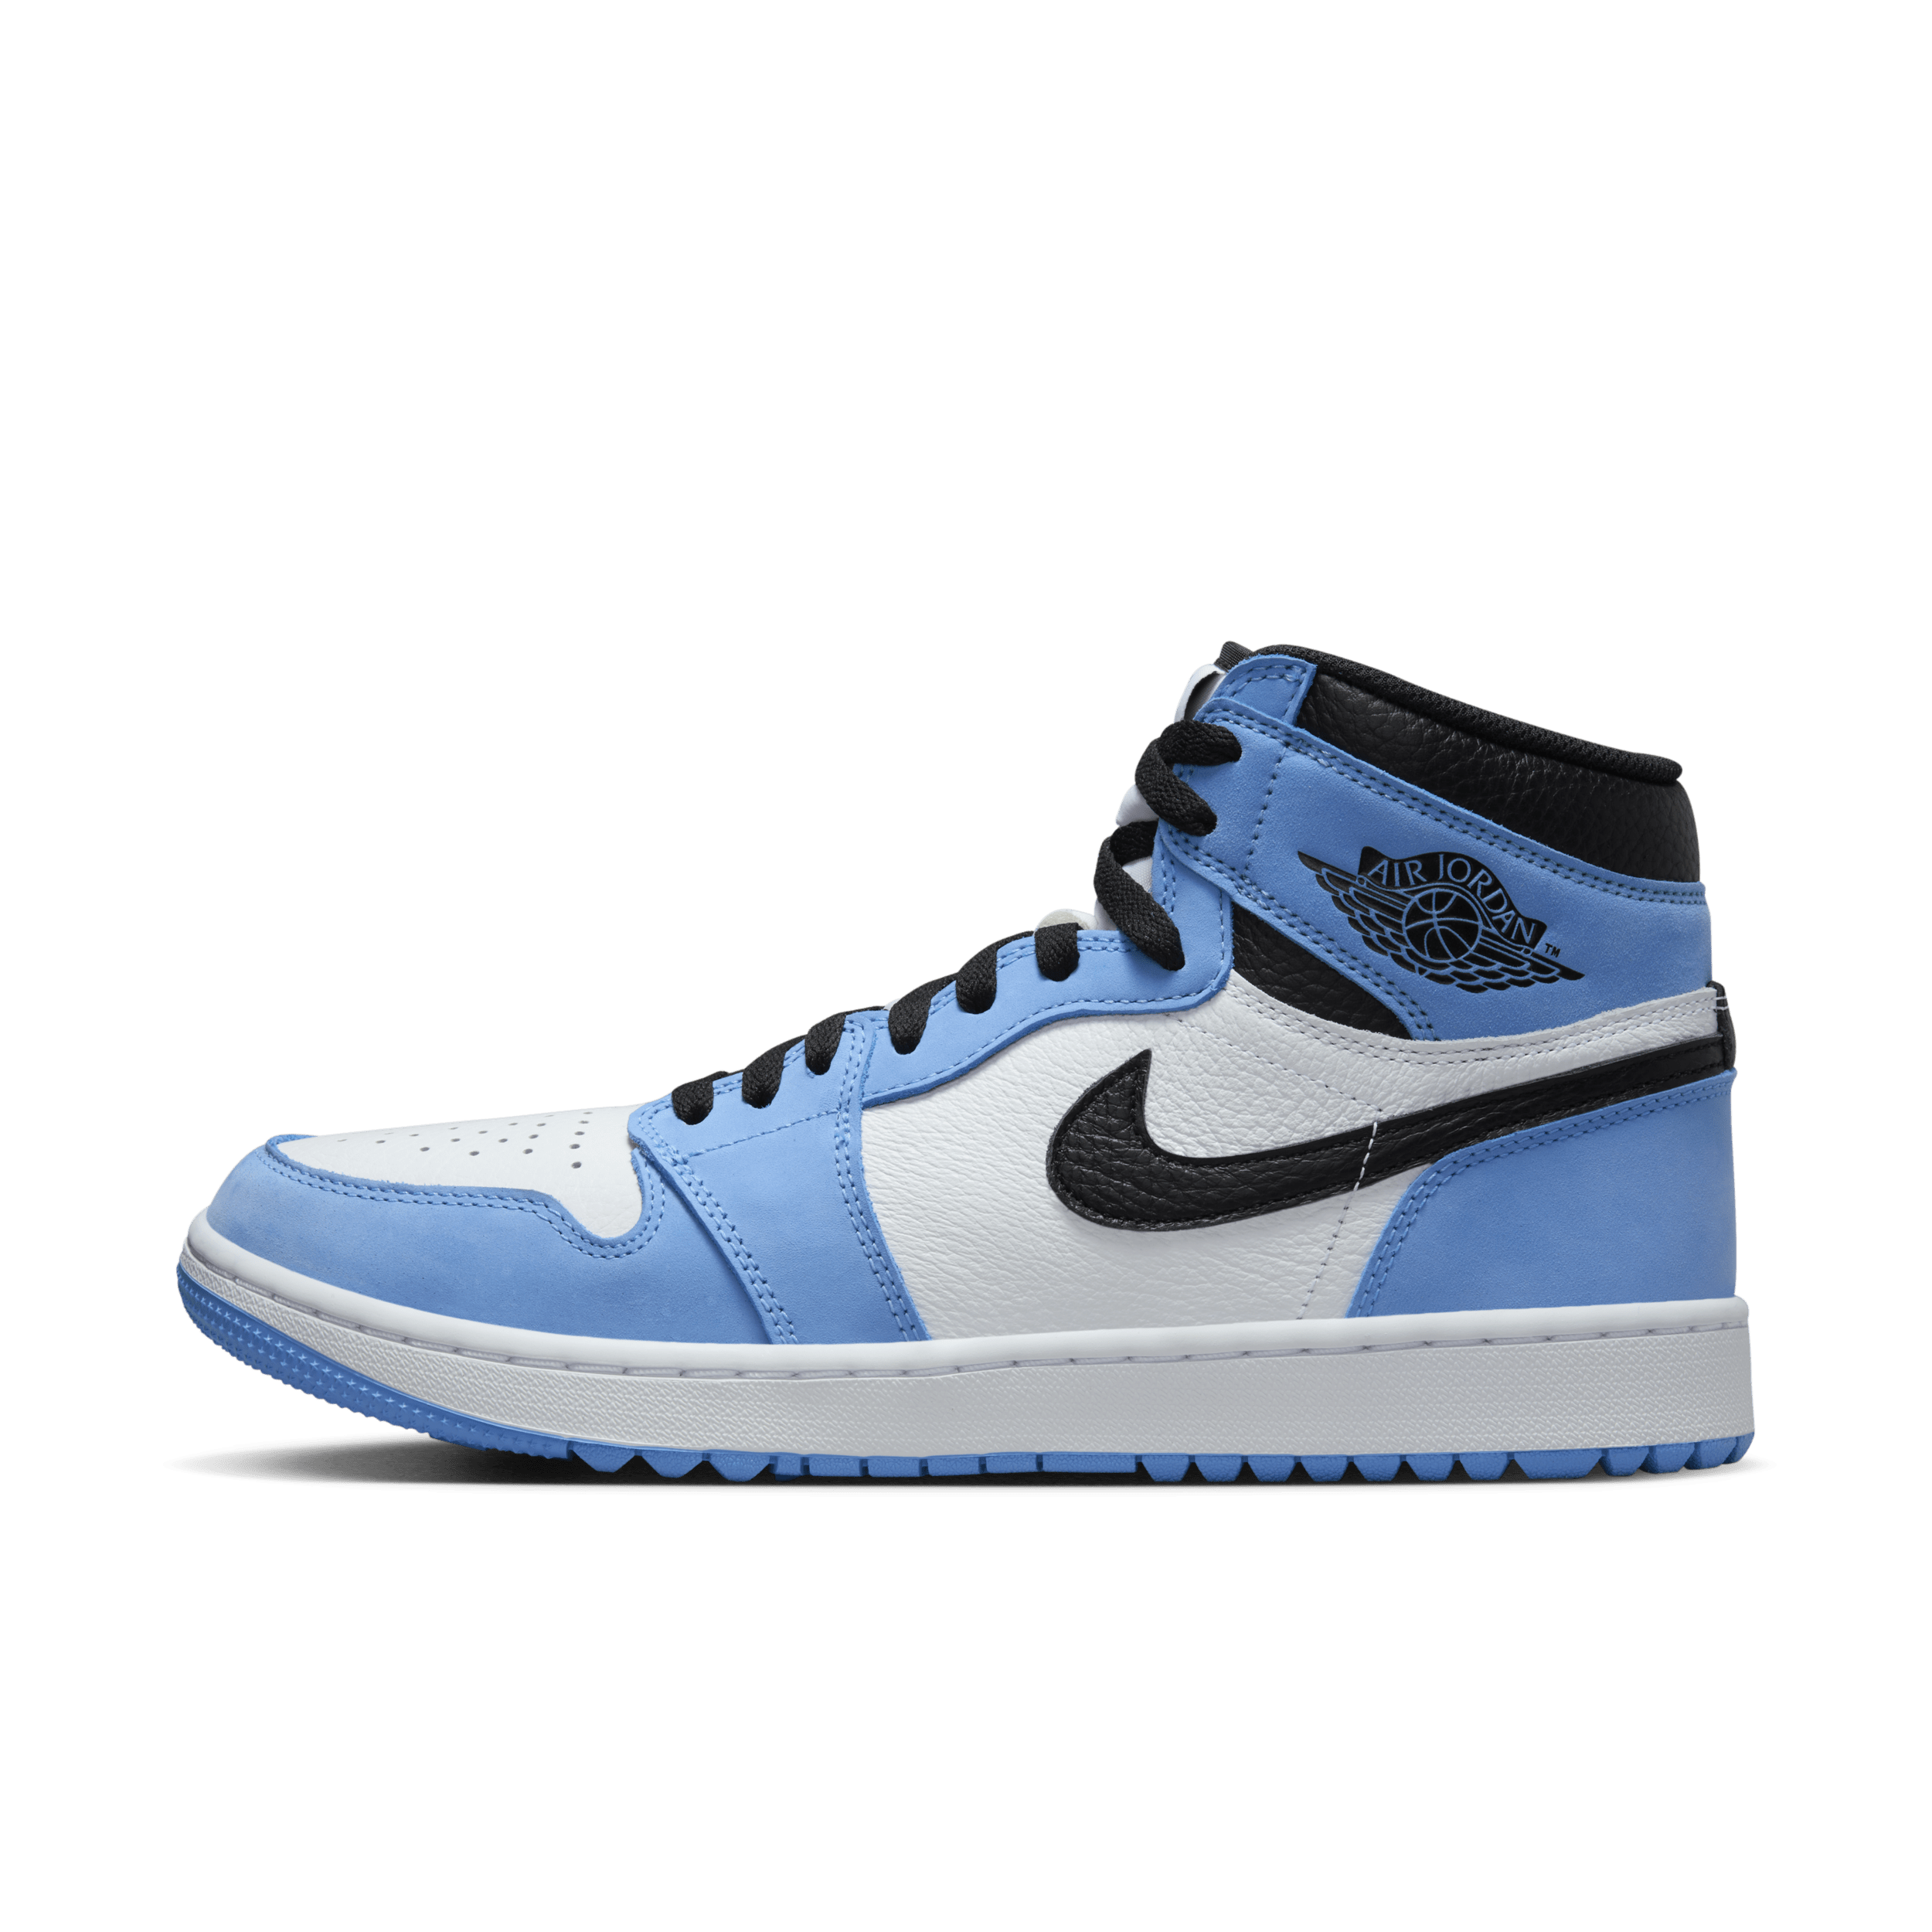 Air Jordan I High G Zapatillas de golf - Hombre - Azul